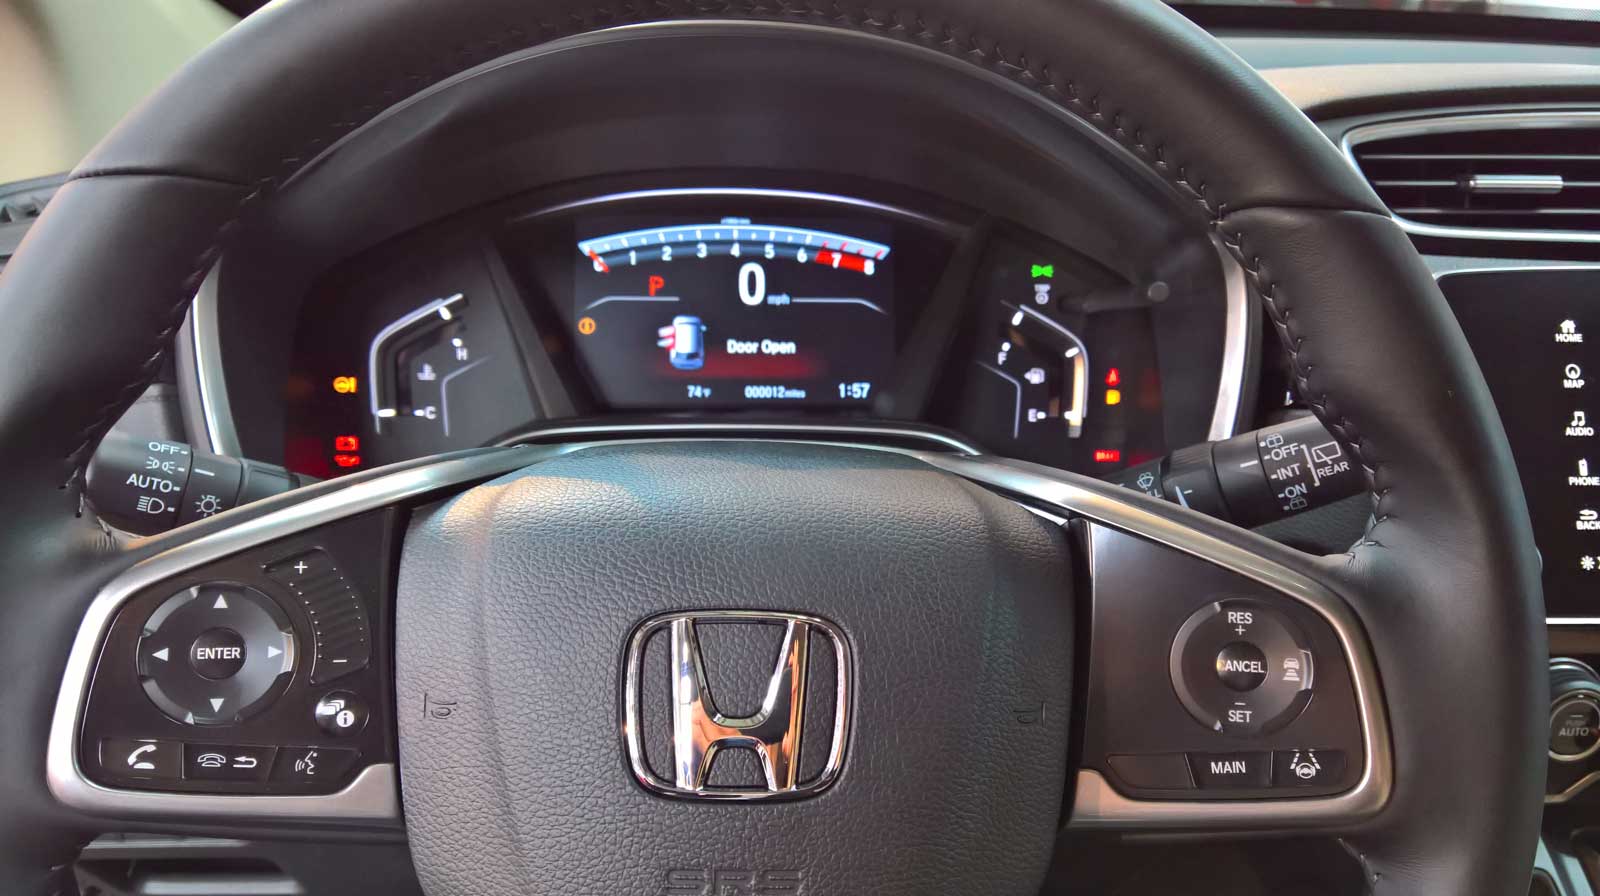 Honda Cr-v Instrument Panel Lights